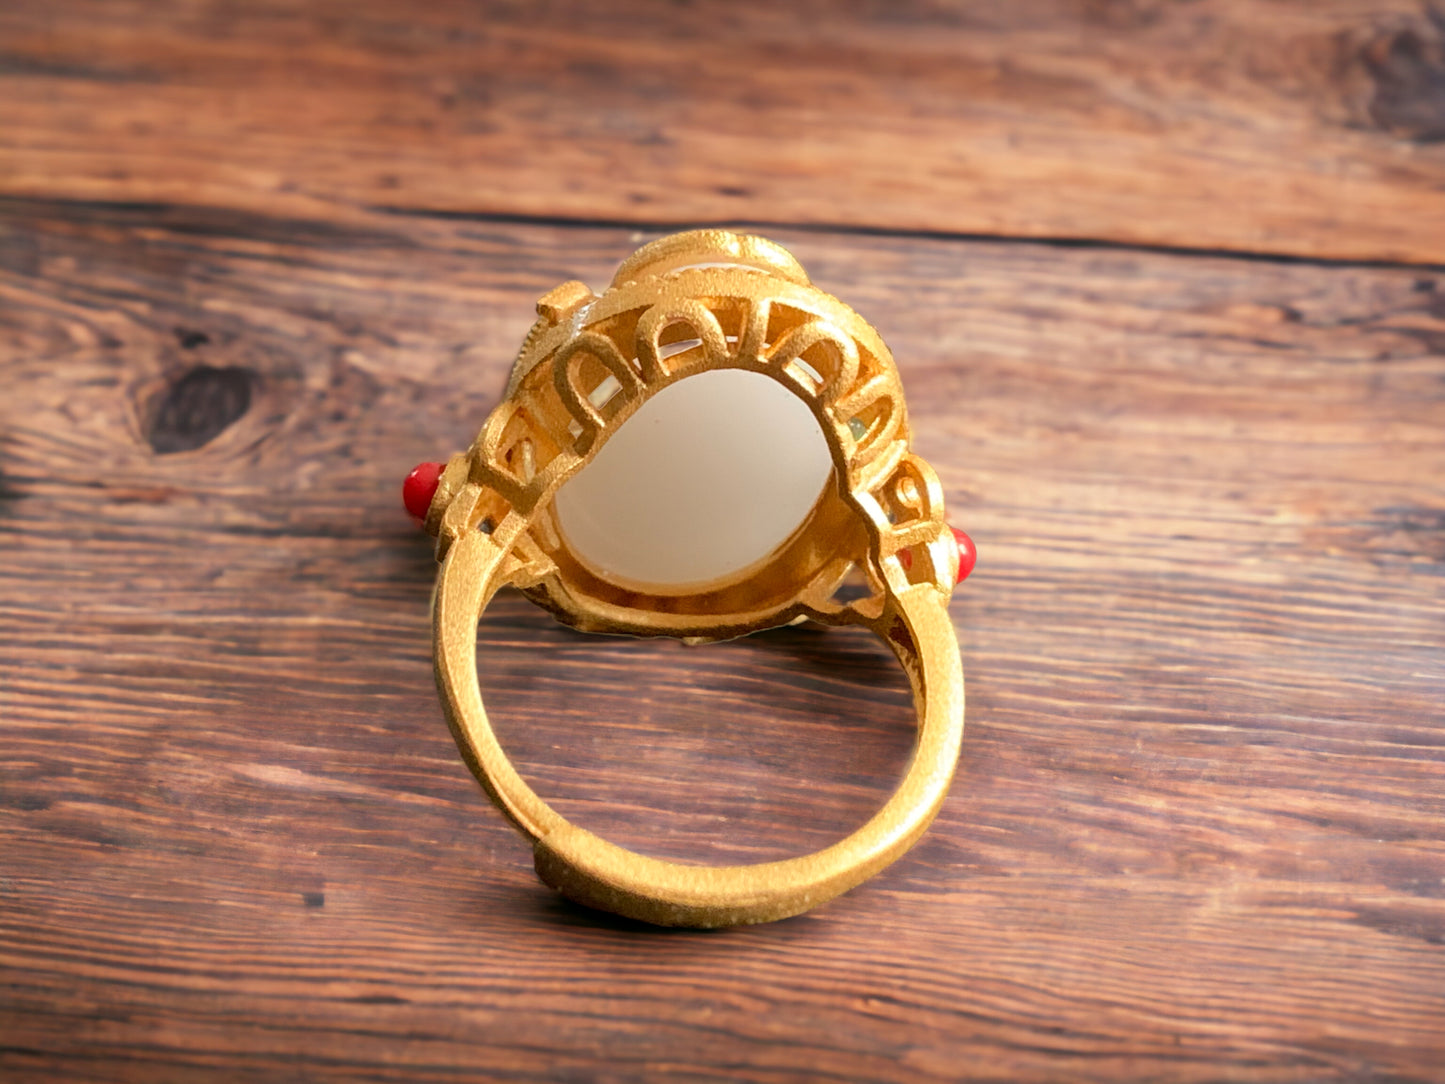 Vintage Design Cloisonne Red Agate Statement Ring